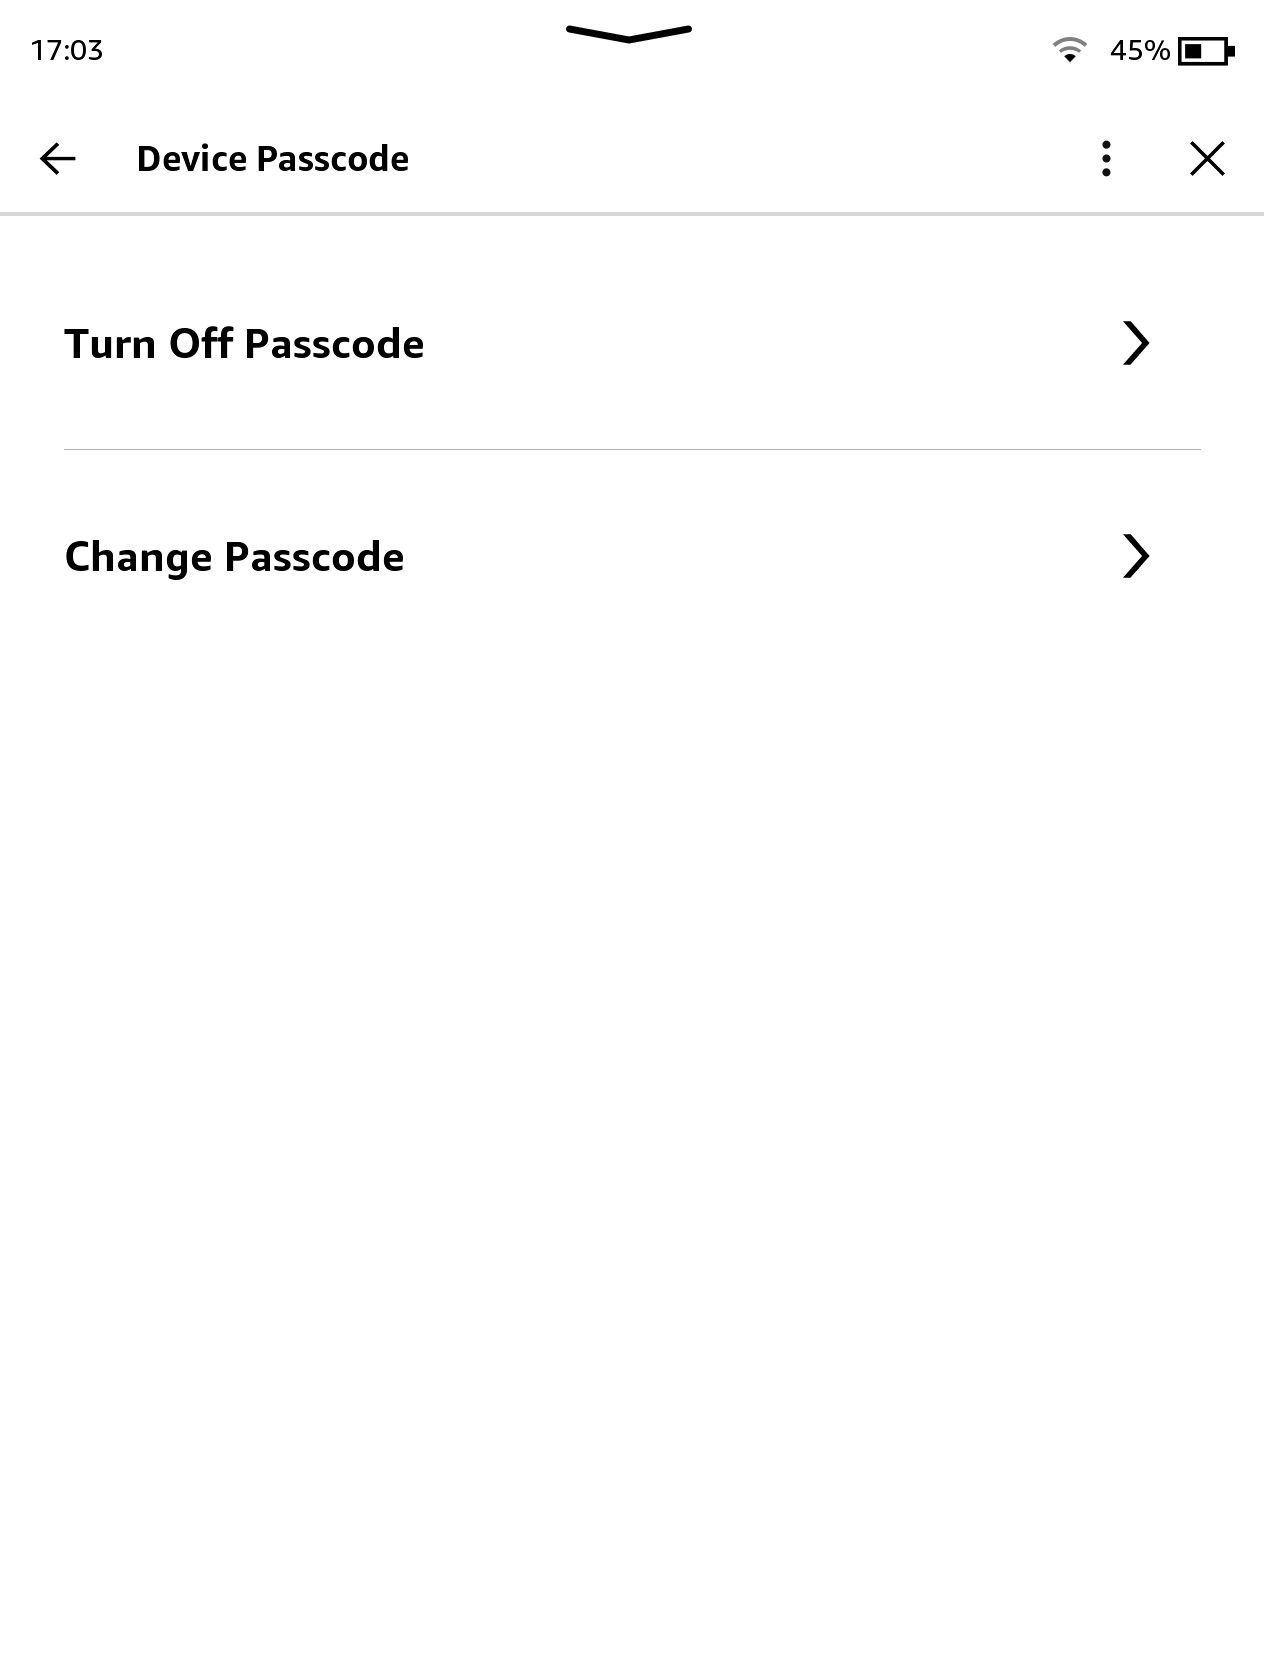 Screenshot of Amazon Kindle Device Passcode options